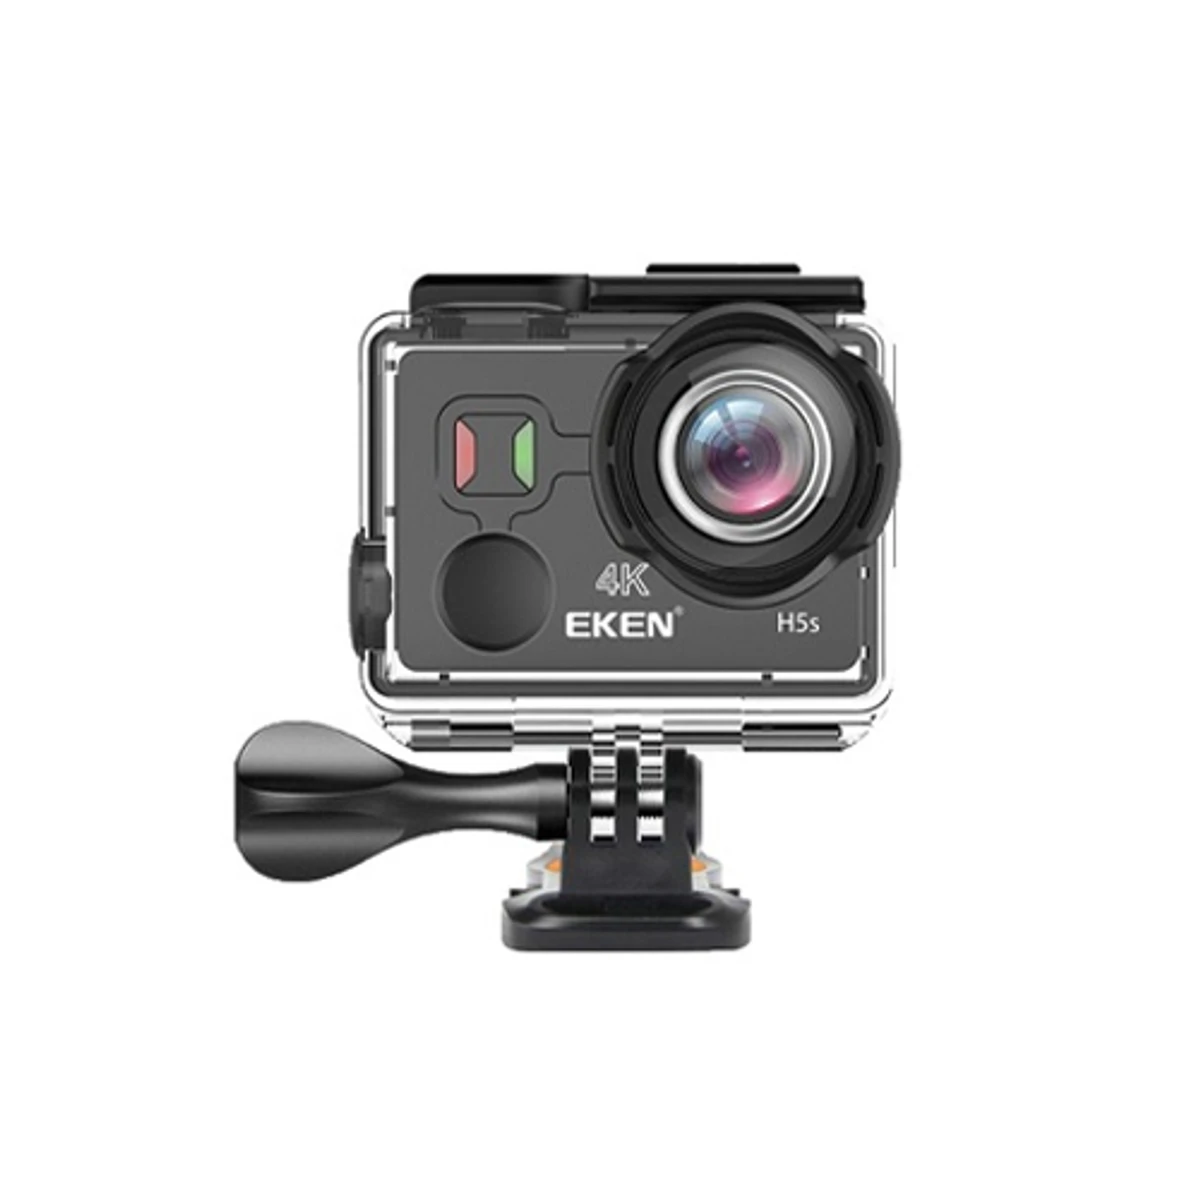 EKEN H5s 4K Ultra HD EIS Anti-Shake Action Camera